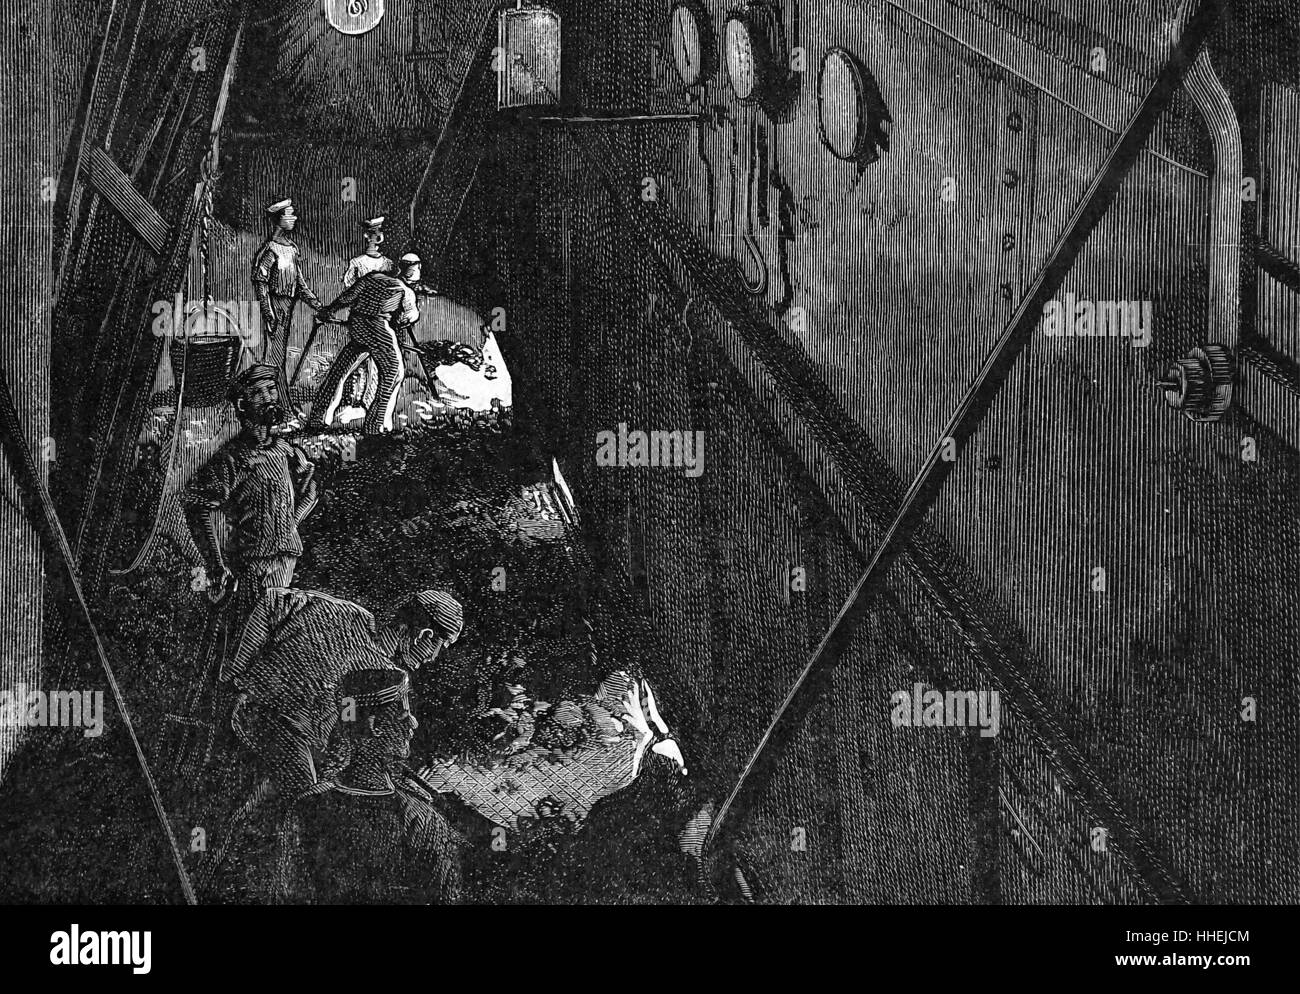 Gravur, Darstellung einer Szene in einem der vier Stokehole ist der EMS Eroberer während der Übungen. Vom 19. Jahrhundert Stockfoto